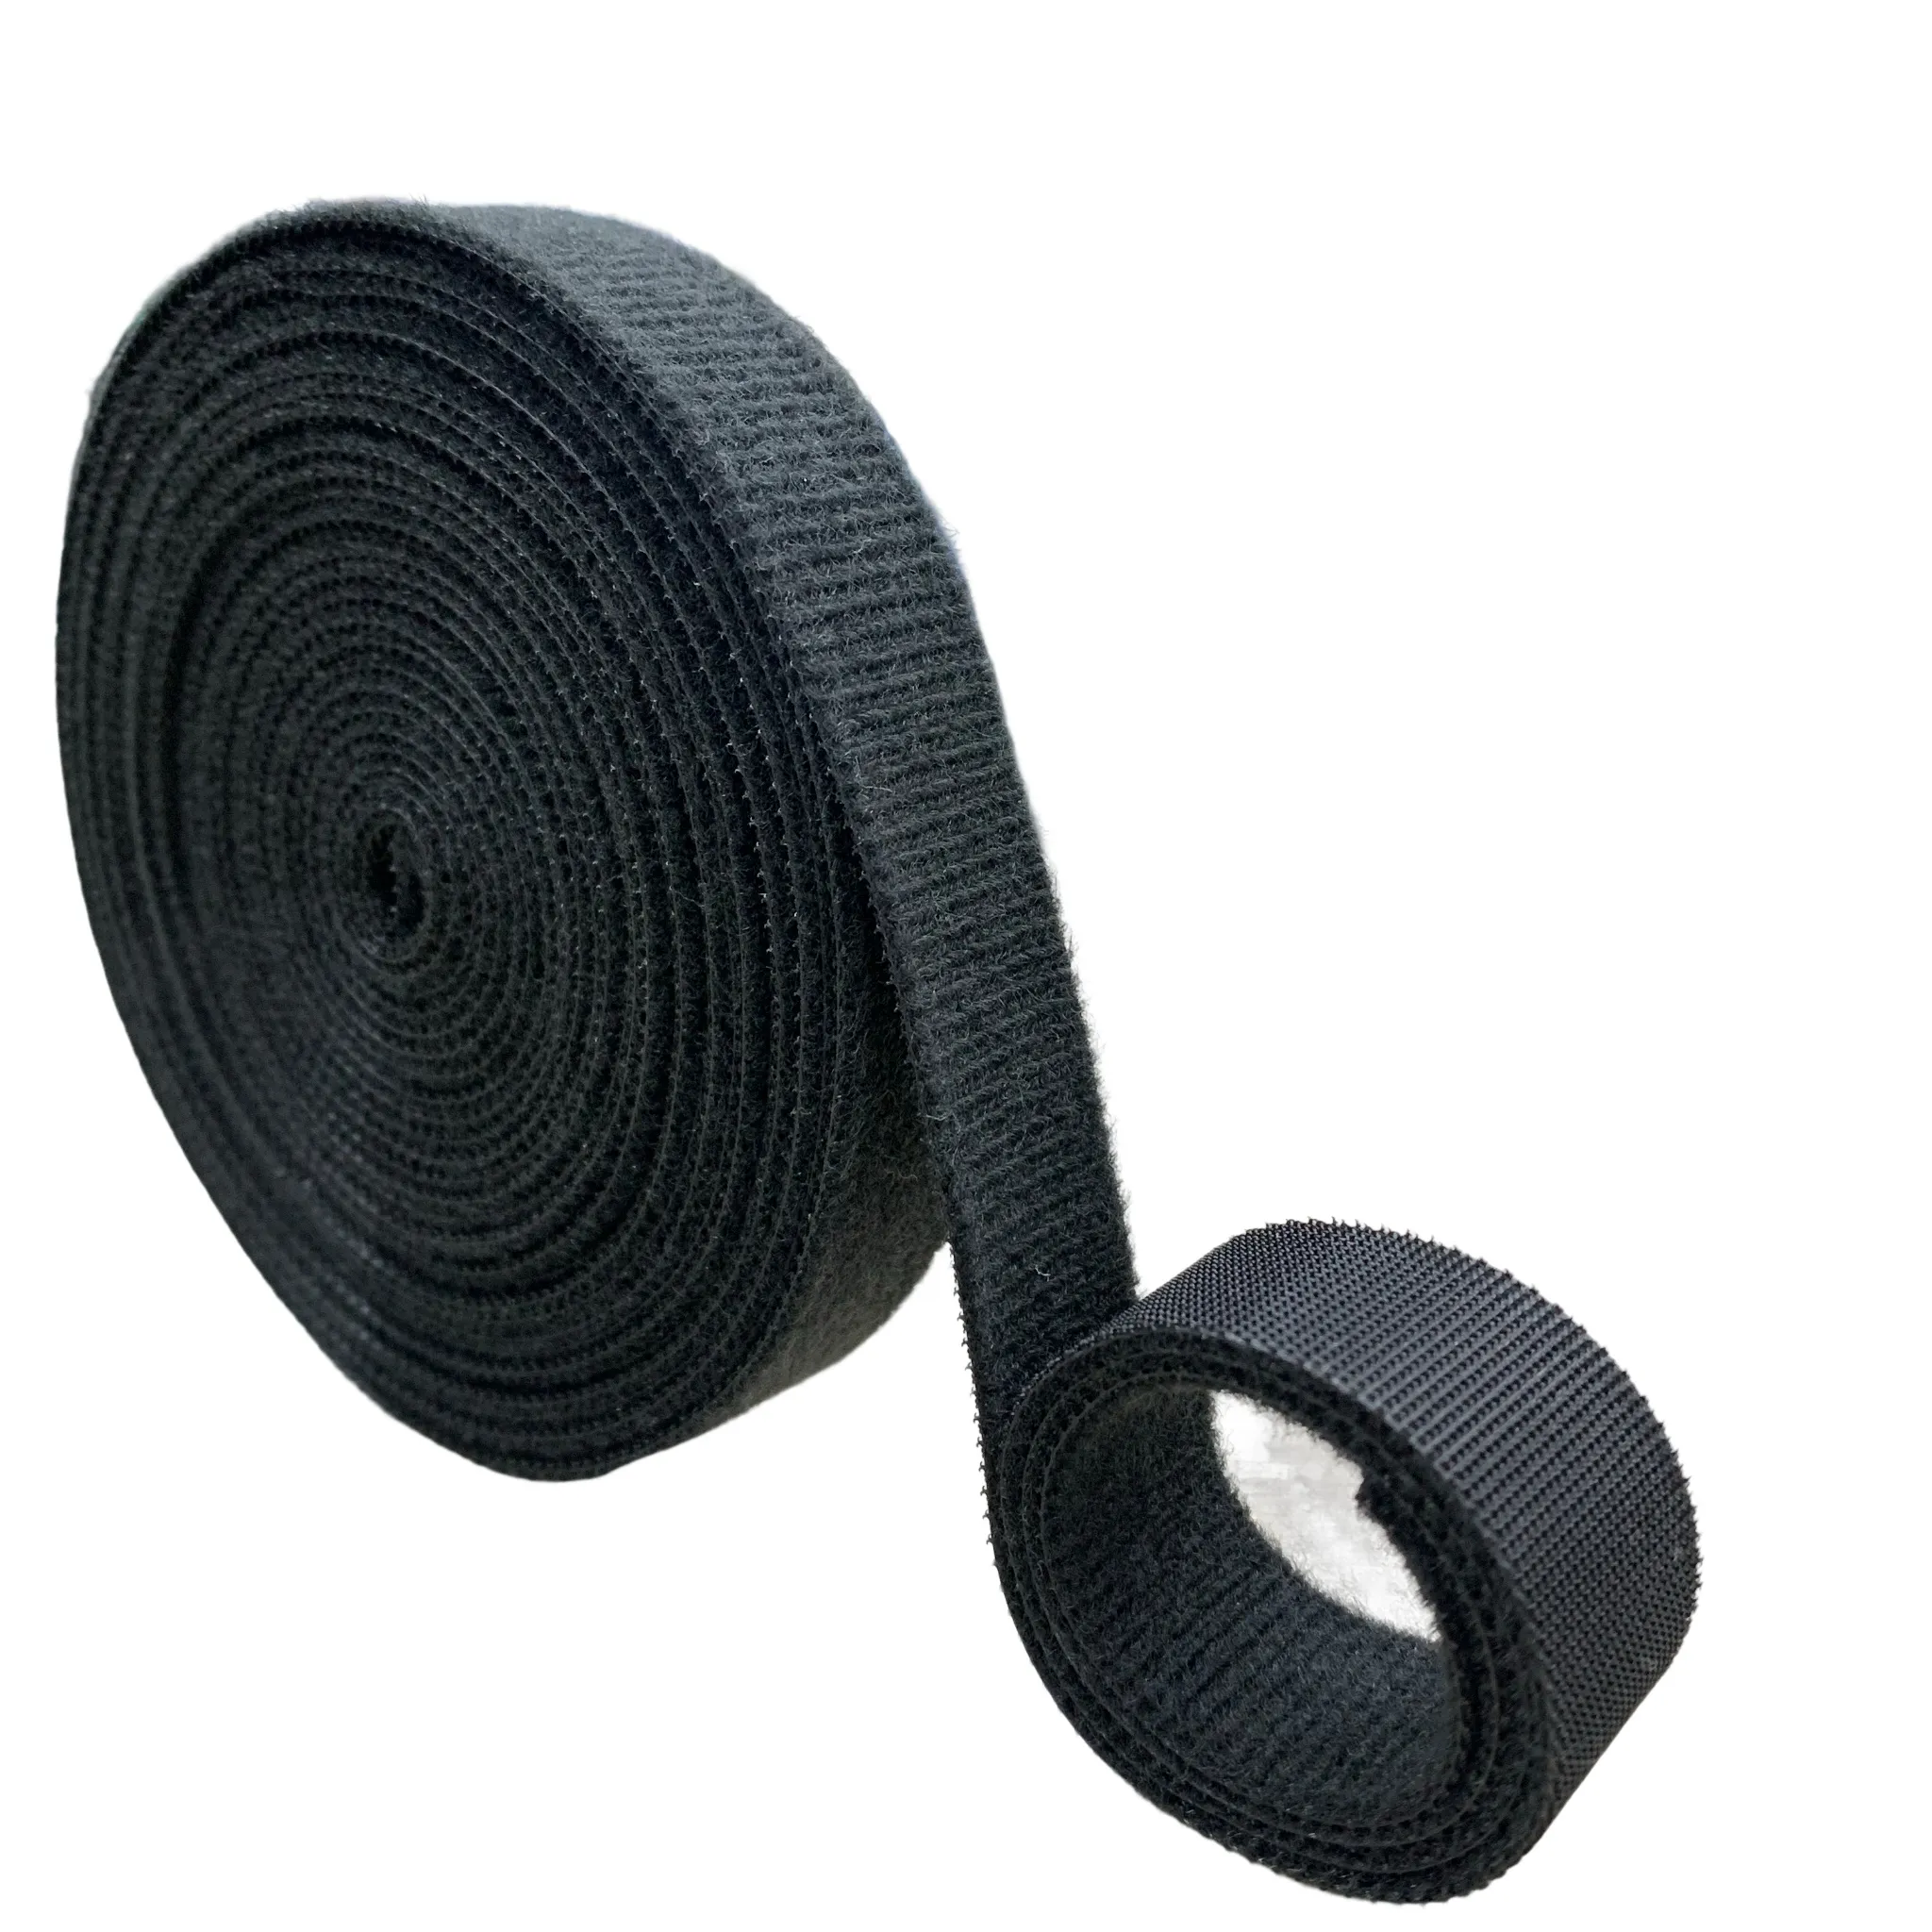 100% Nylon Self Adhesive Hook and Loop Tape Black Adhesive Hook Loop Fastener tape